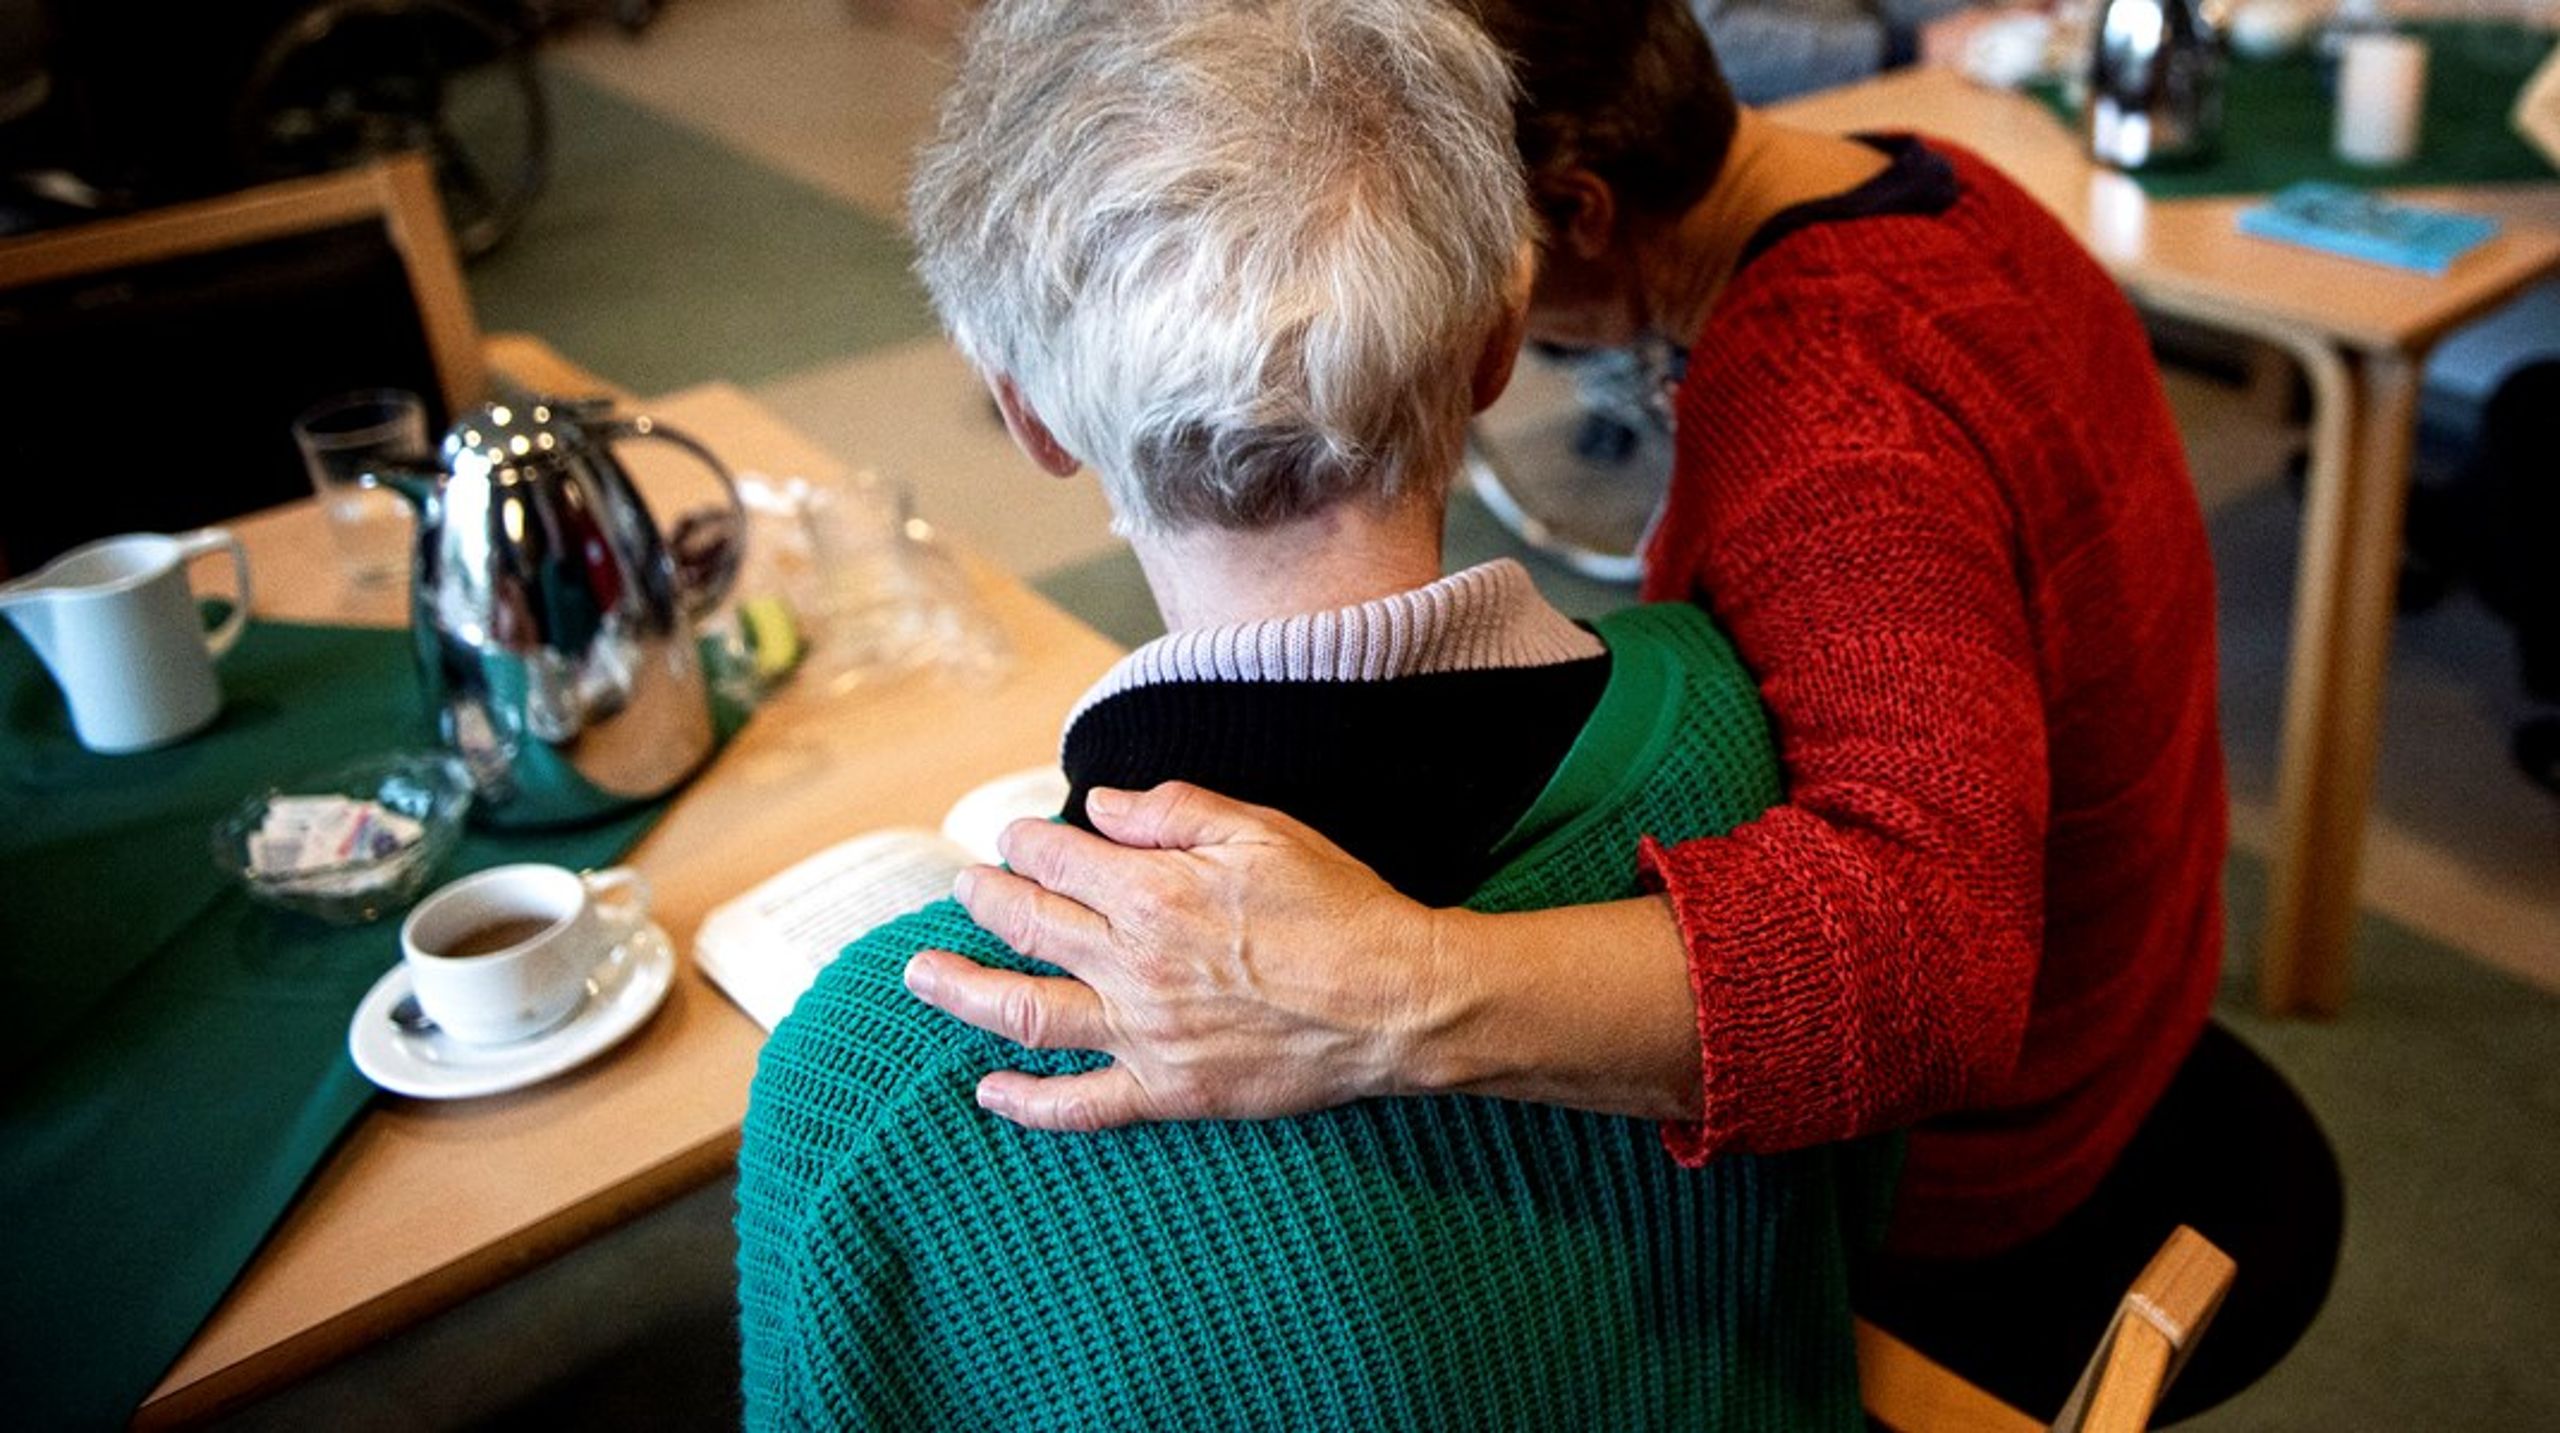 En effektiv pleje til den multisyge, ældre borger kræver
specialistviden, skriver


















Bente Høy og Ingrid Lysholdt.<br>